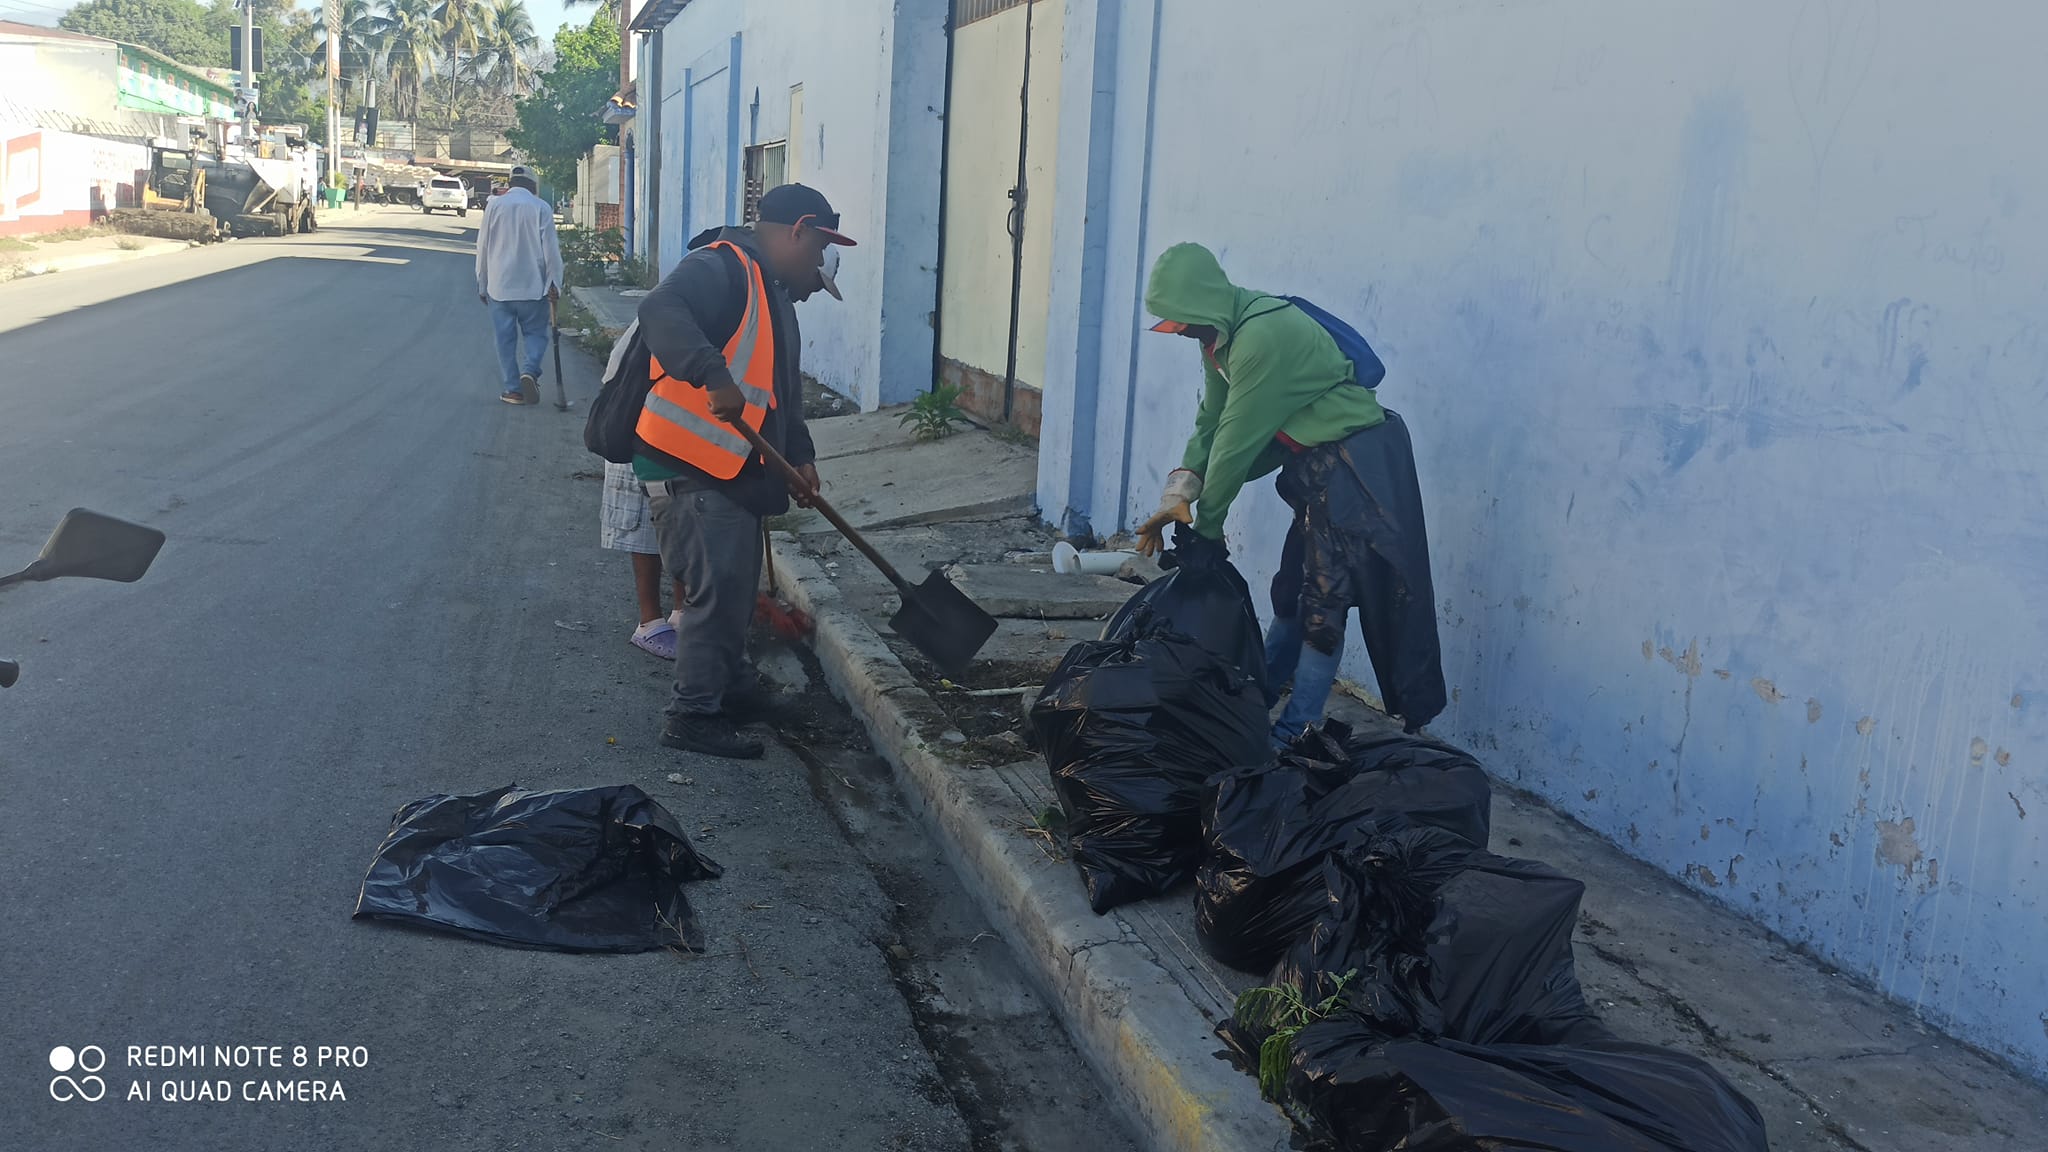 Las brigadas de limpieza de la Alcaldía Municipal de Azua, trabajan con empeño para mantener limpia y ordenada la misma, siguiendo las órdenes de nuestro Alcalde Dr. Ruddy González, siempre trabajando para mantener la ciudad  ordenada y en buenas condiciones.